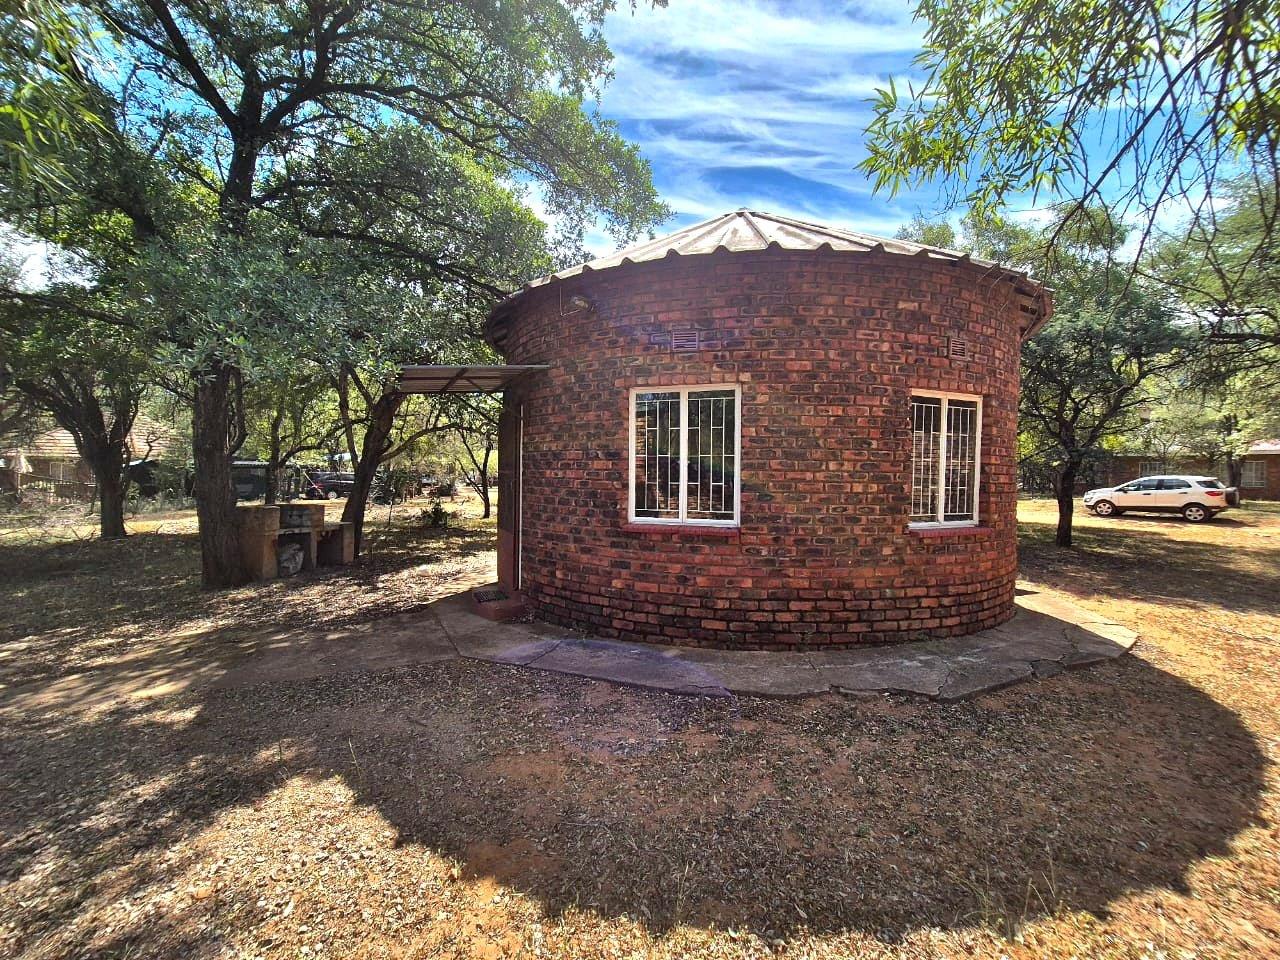 1 Bedroom Property for Sale in Leeupoort Limpopo